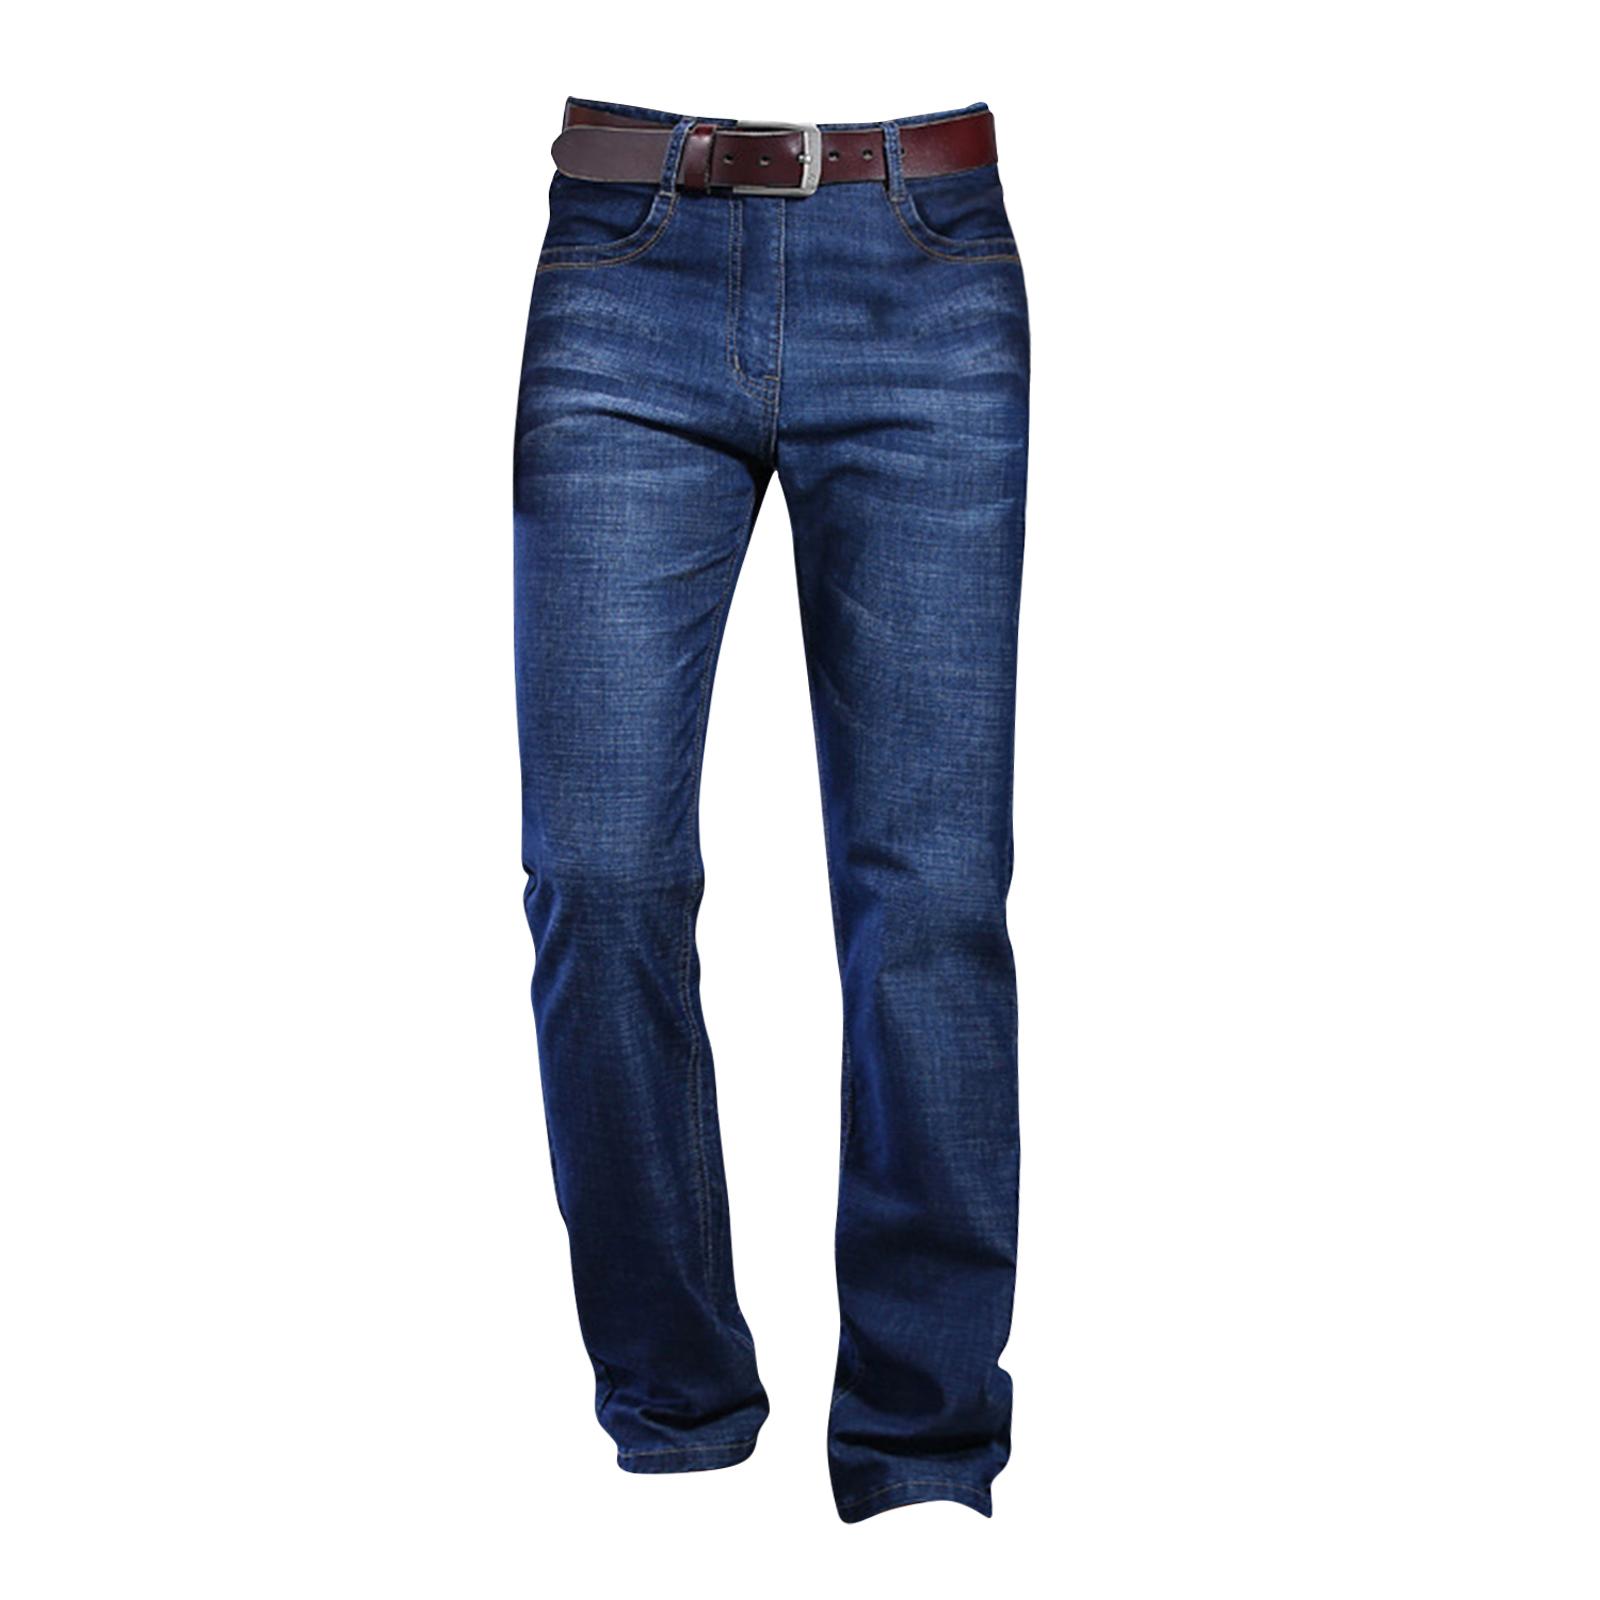 Pánske džínsy jednoduchého strihu, rovné, široké